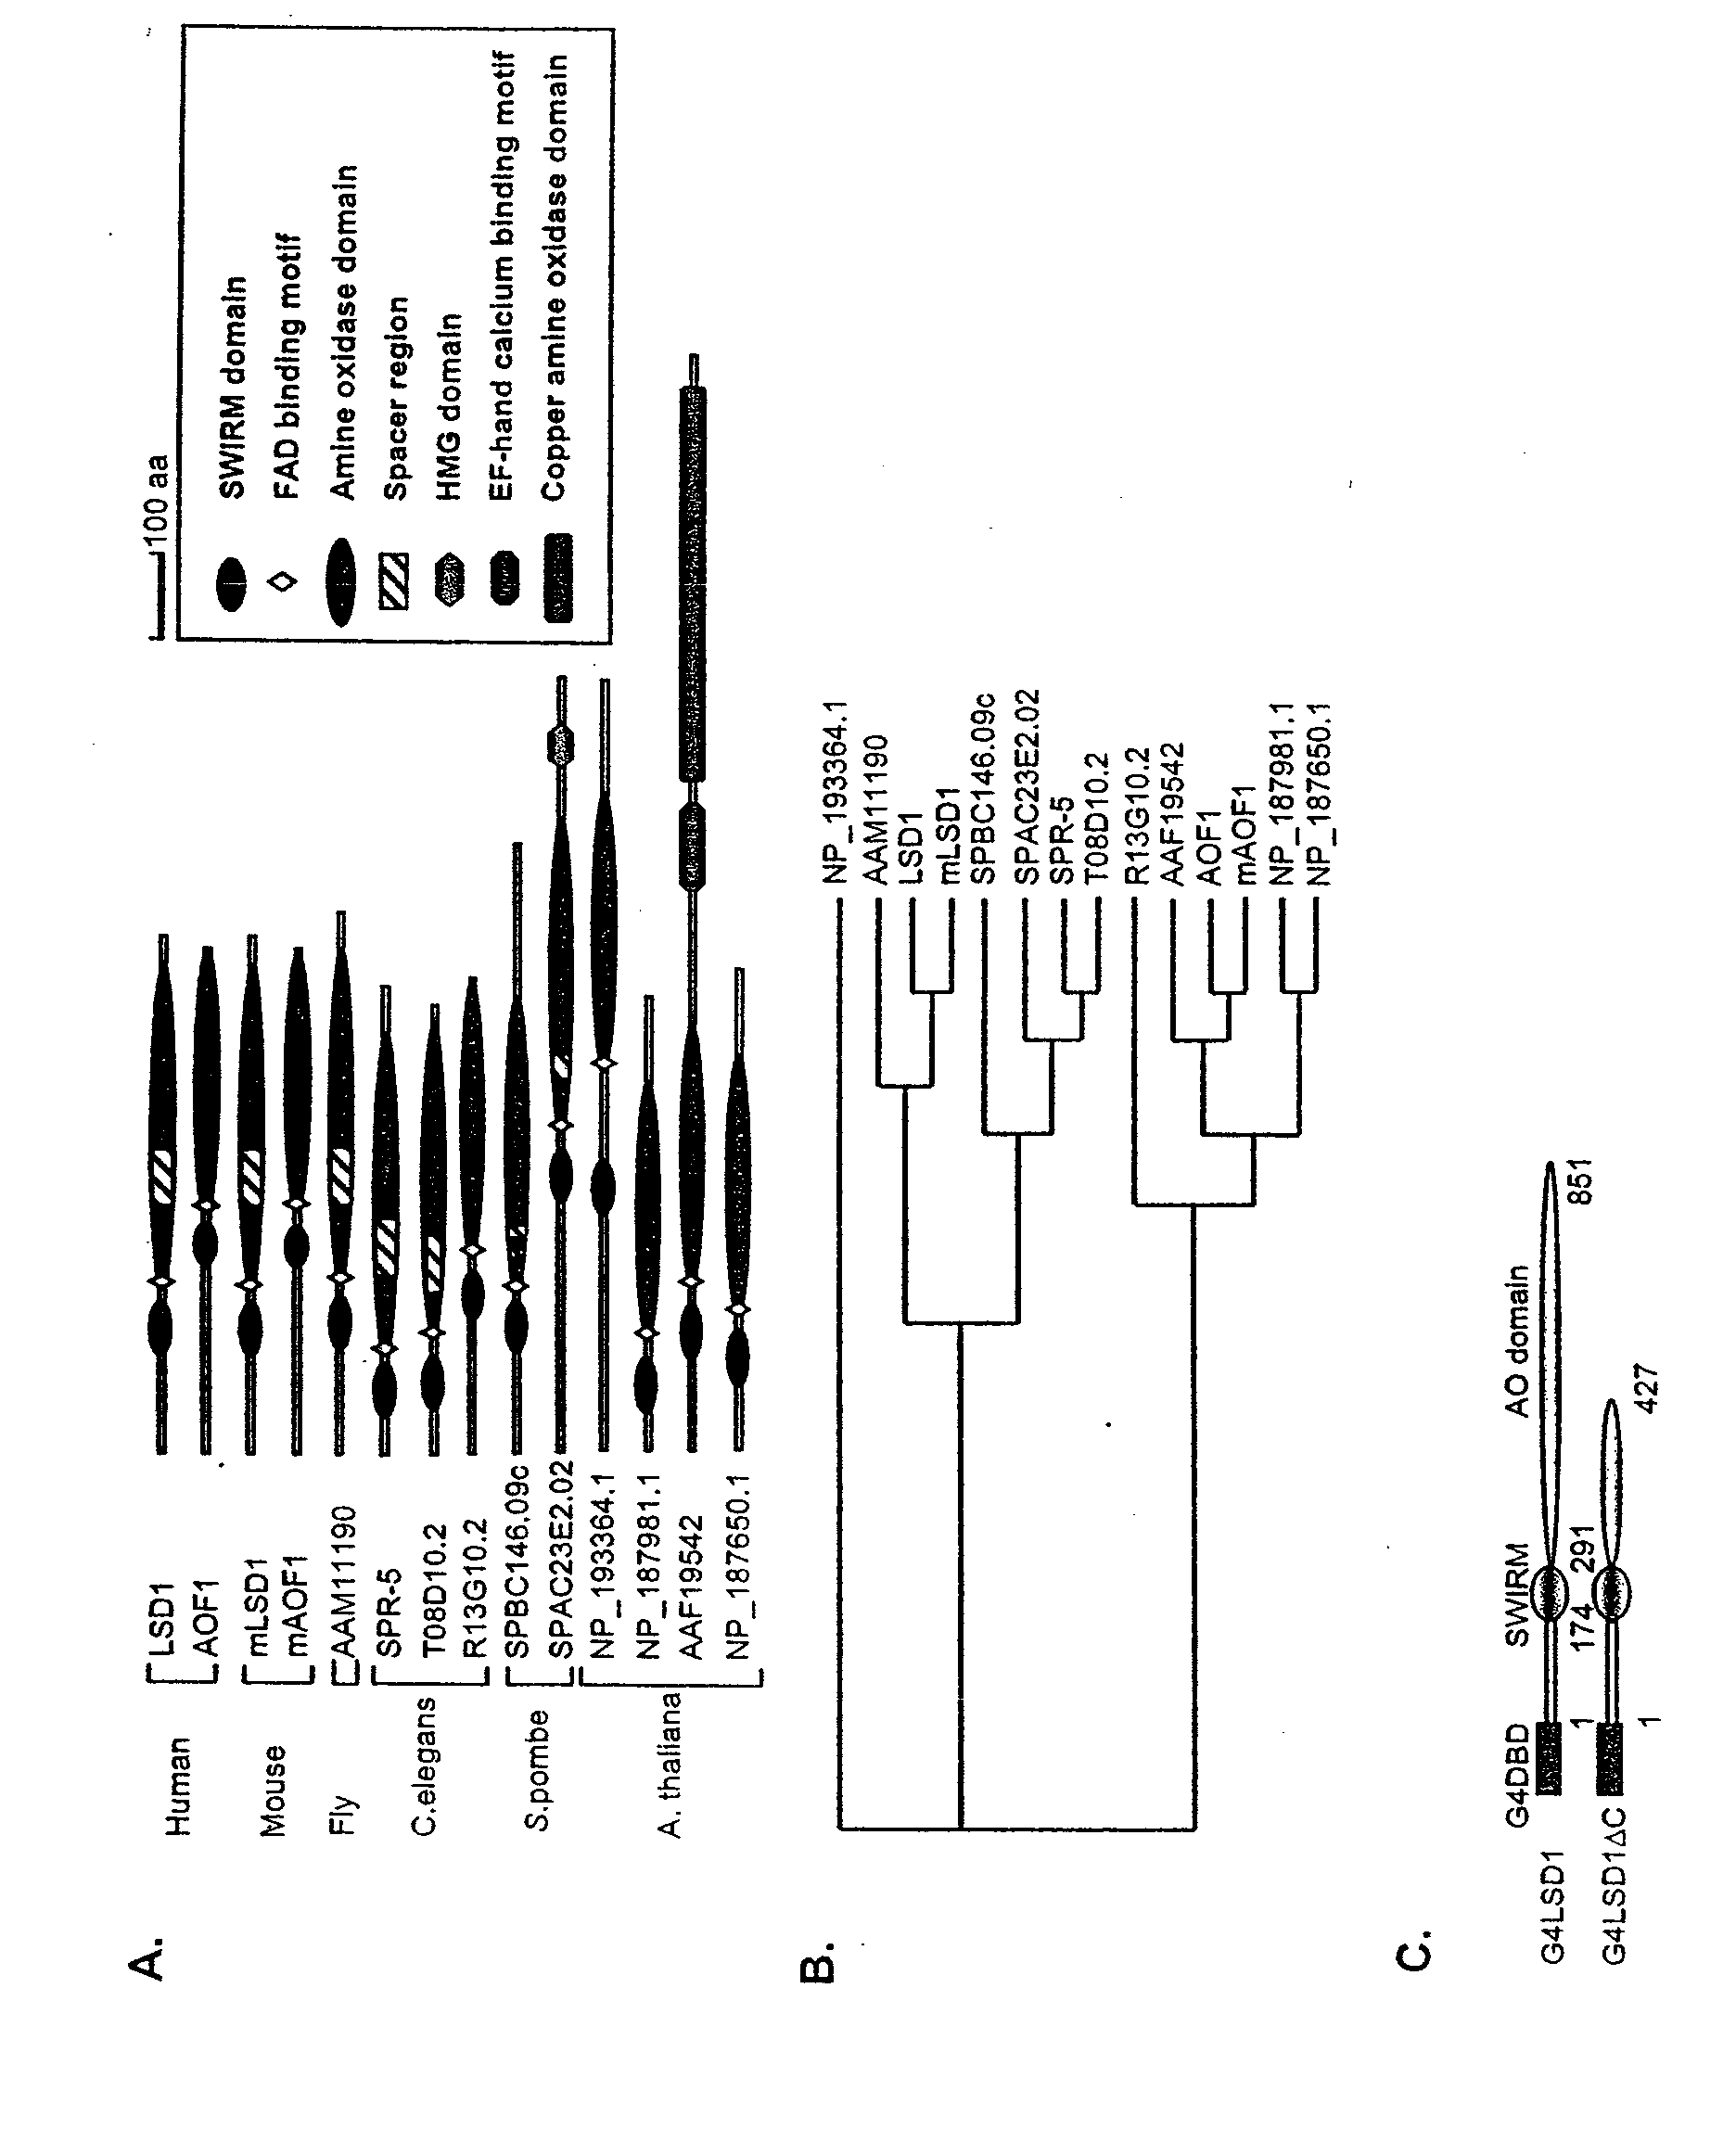 Histone Demethylation Mediated By The Nuclear Amine Oxidase Homolog LSD1